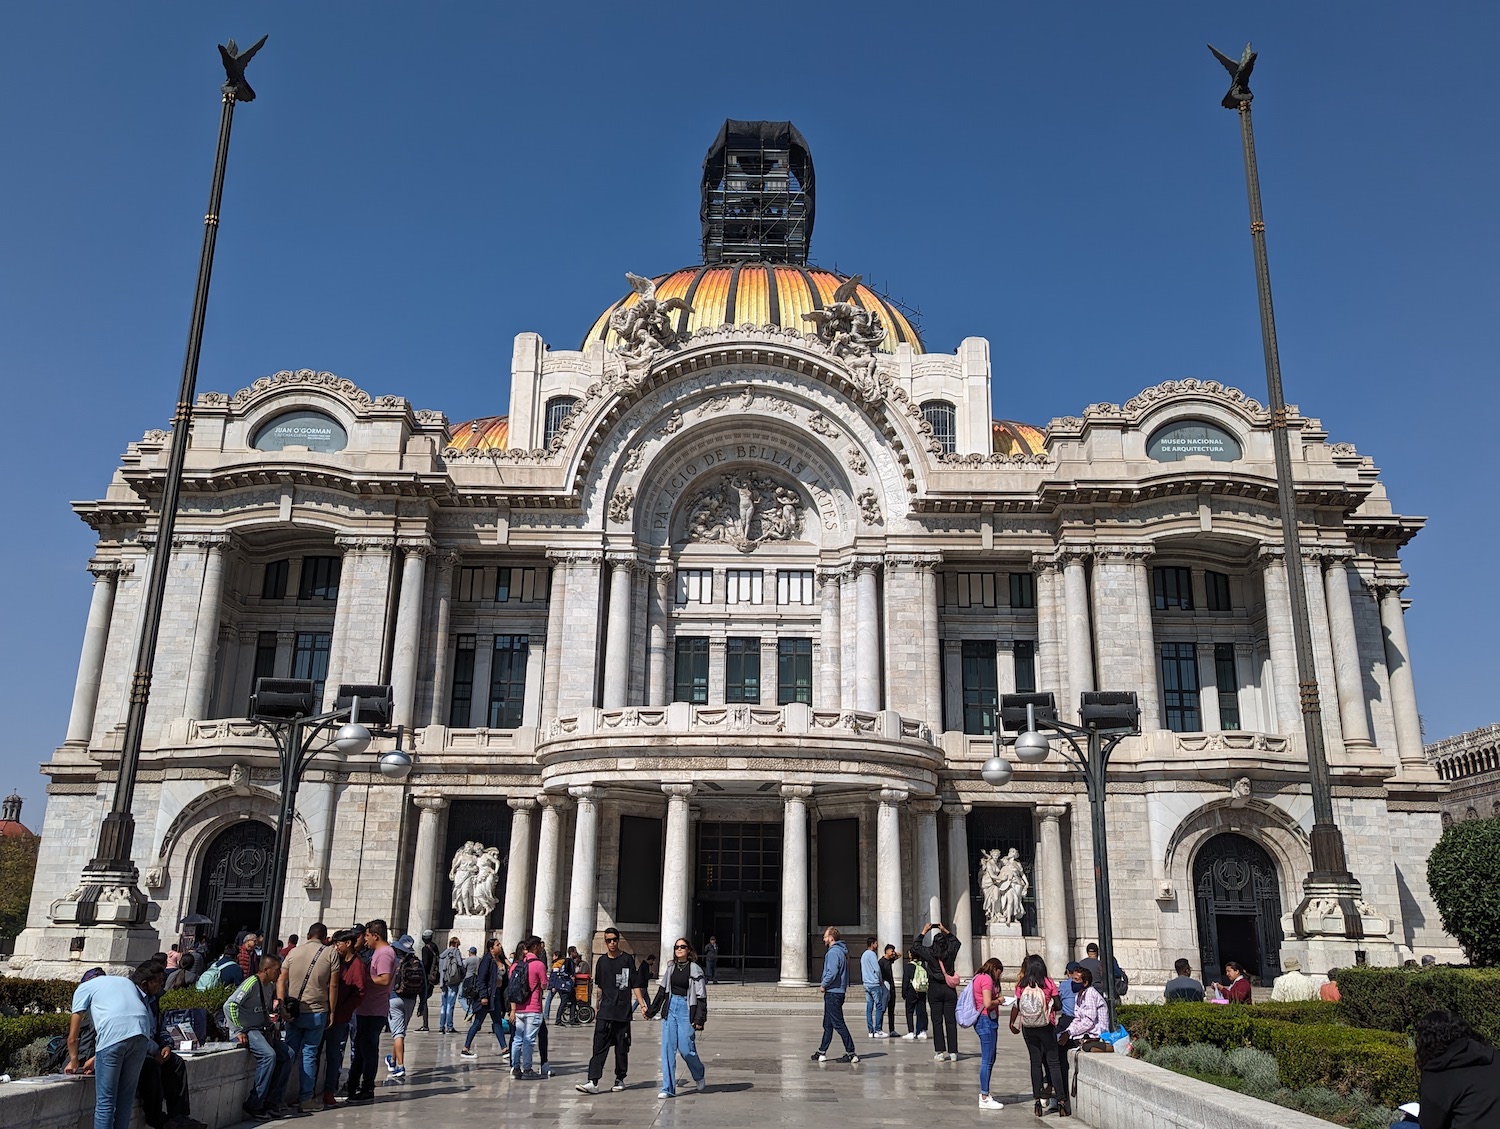 The Palacio de Bellas Artes, or Palace of Fine Arts, in Mexico City